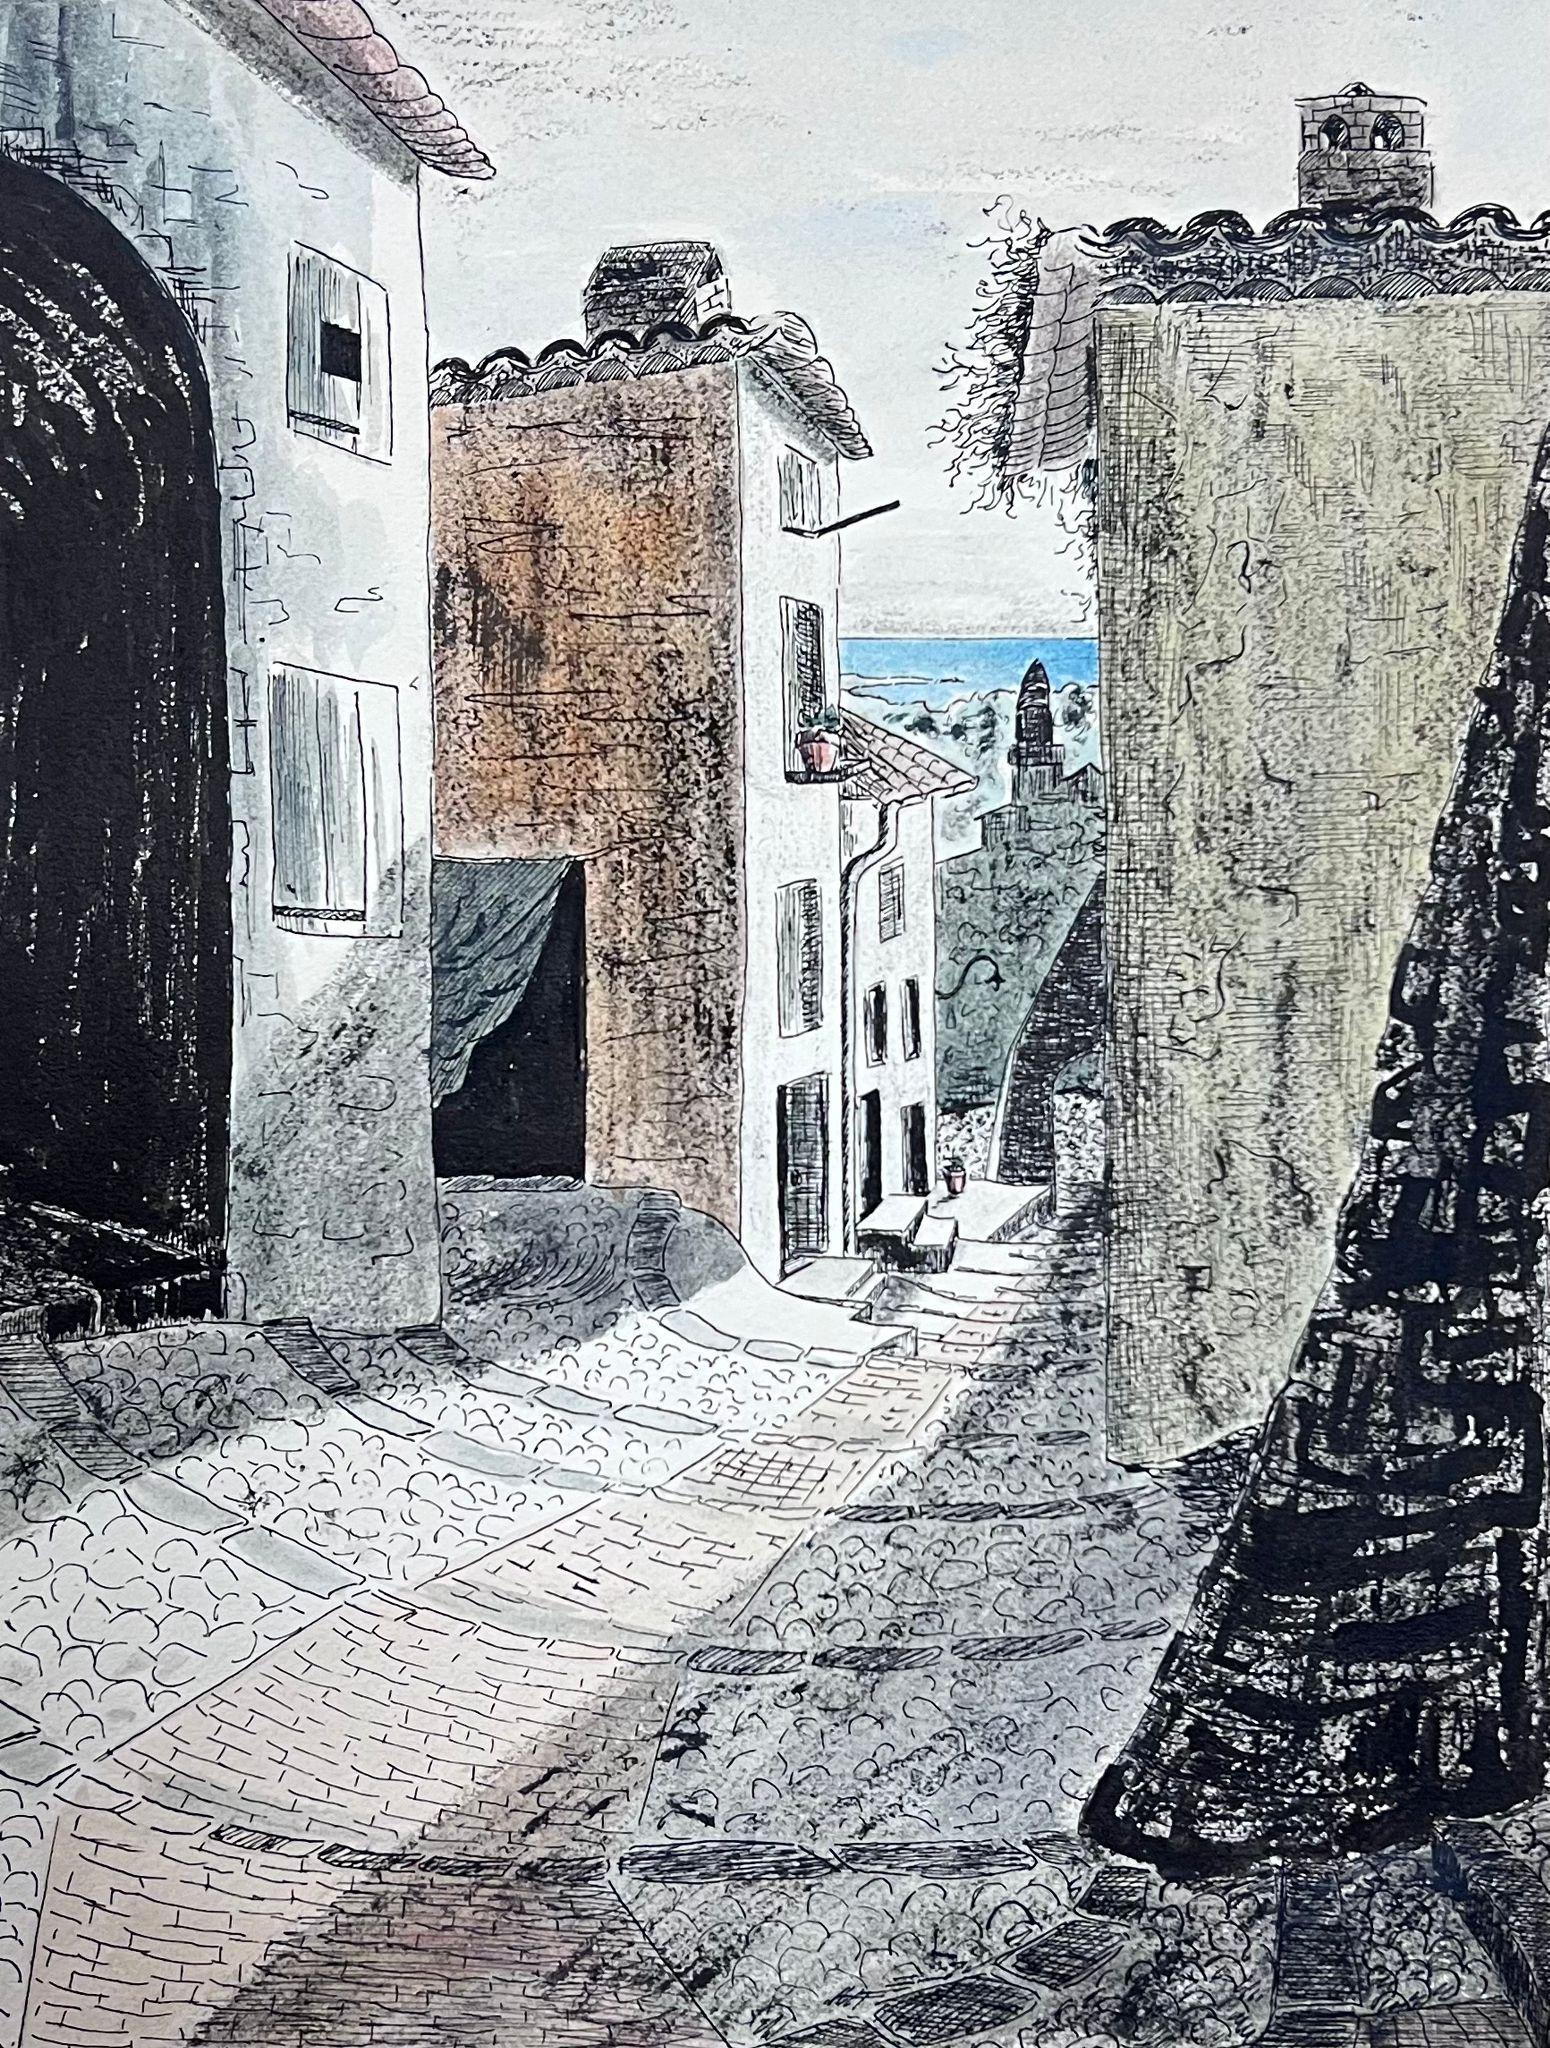 Landscape Painting Josine Vignon - Peinture post-impressionniste française des années 1940, vue de rue d'un village méditerranéen